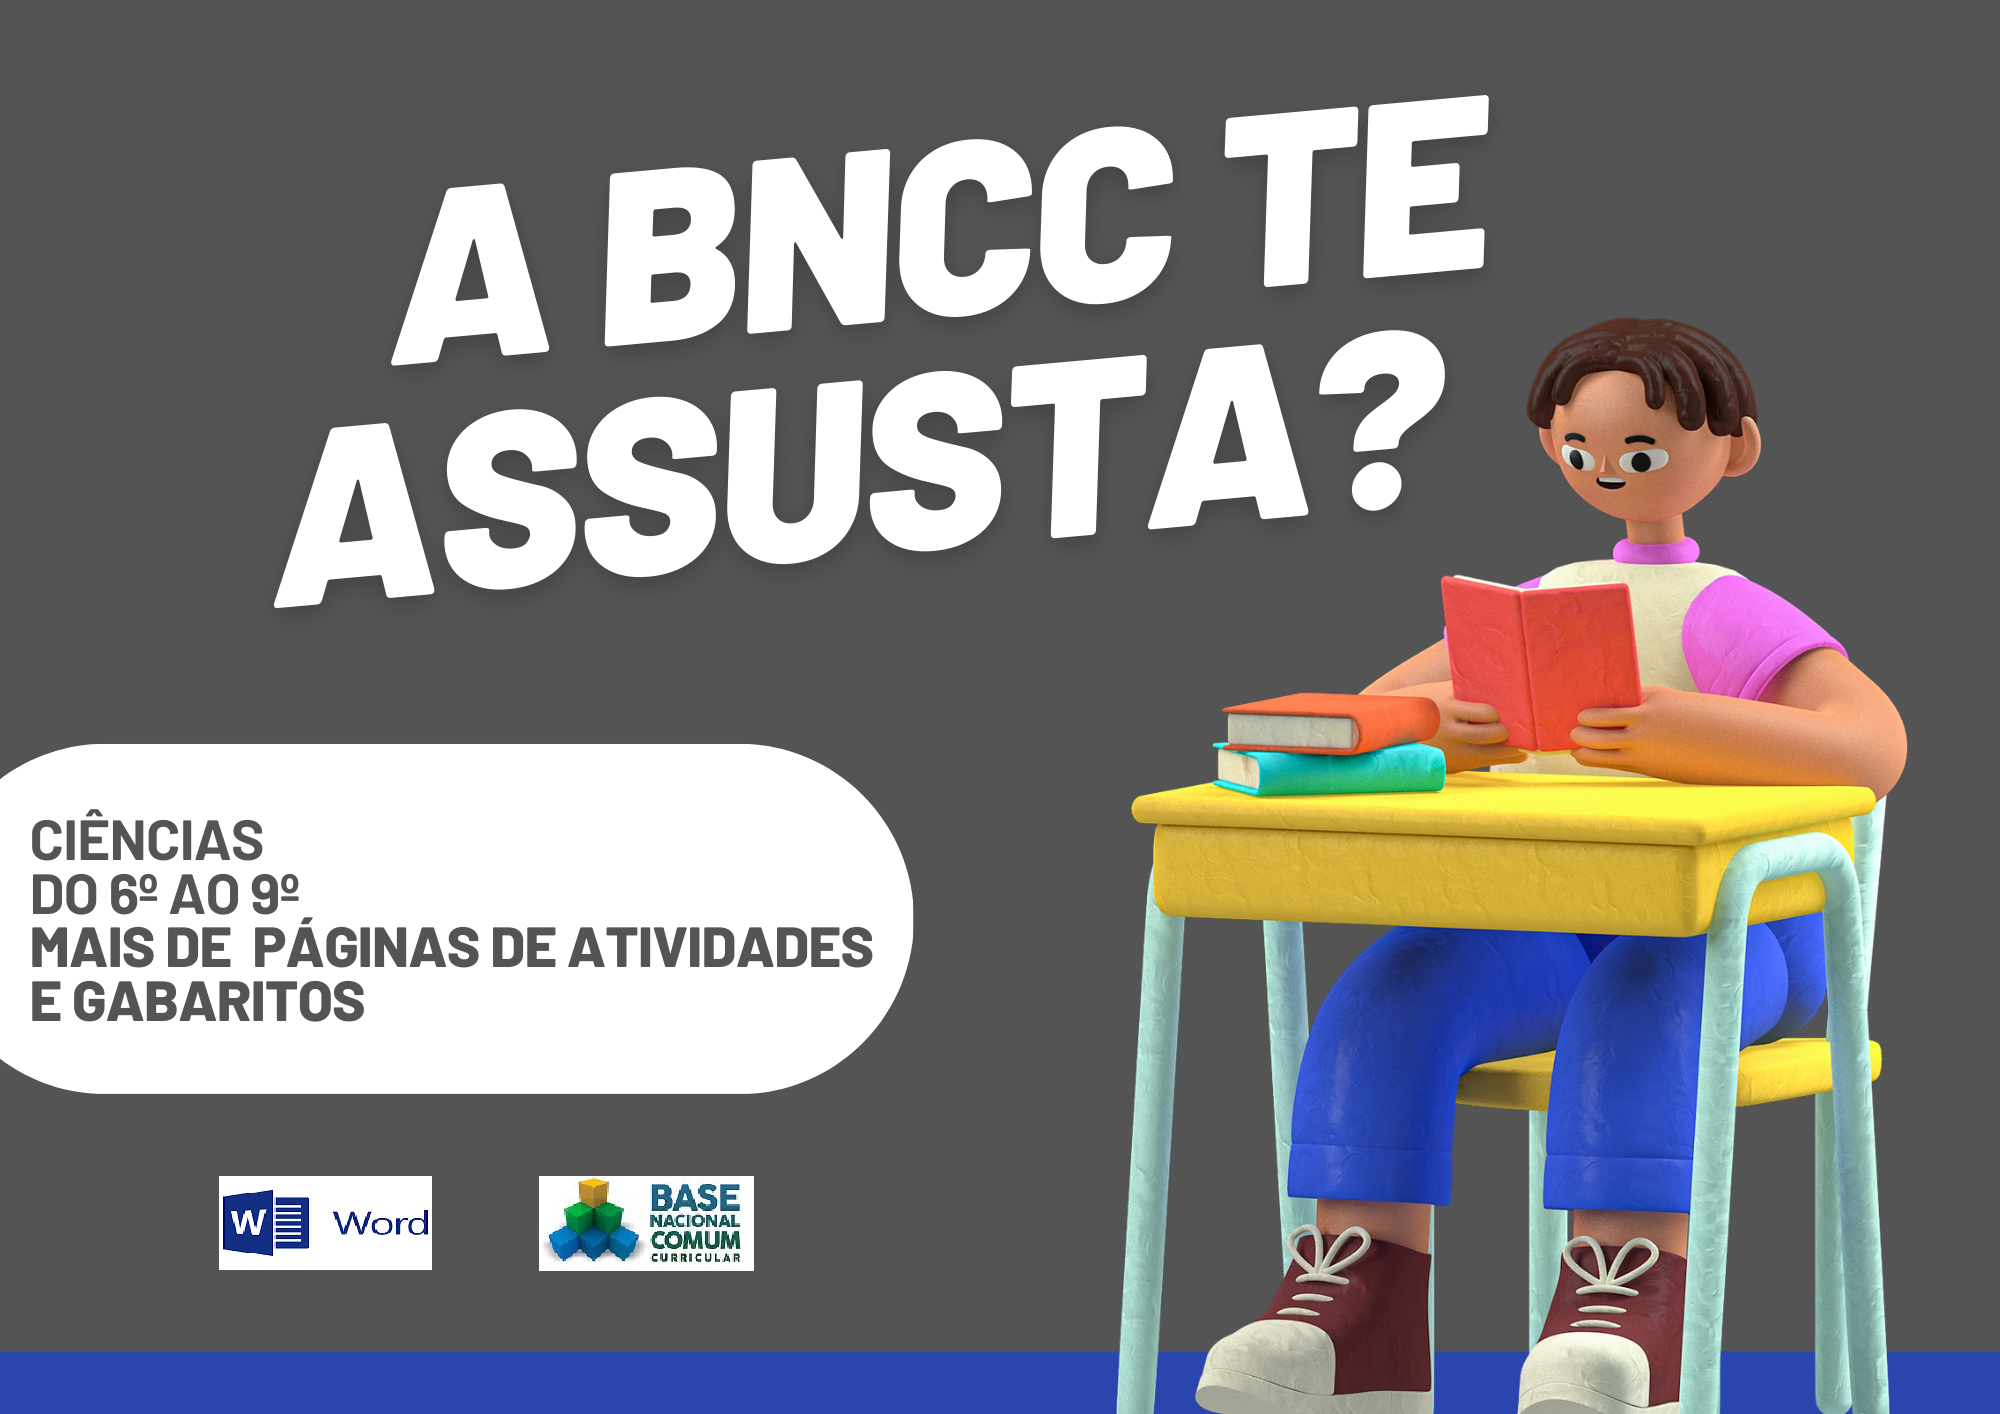 A BNCC te assusta Ciências do 6º ao 9º ano mais de páginas de atividades e gabaritos com um aluno segurando um livro e o símbolo do Word e da BNCC